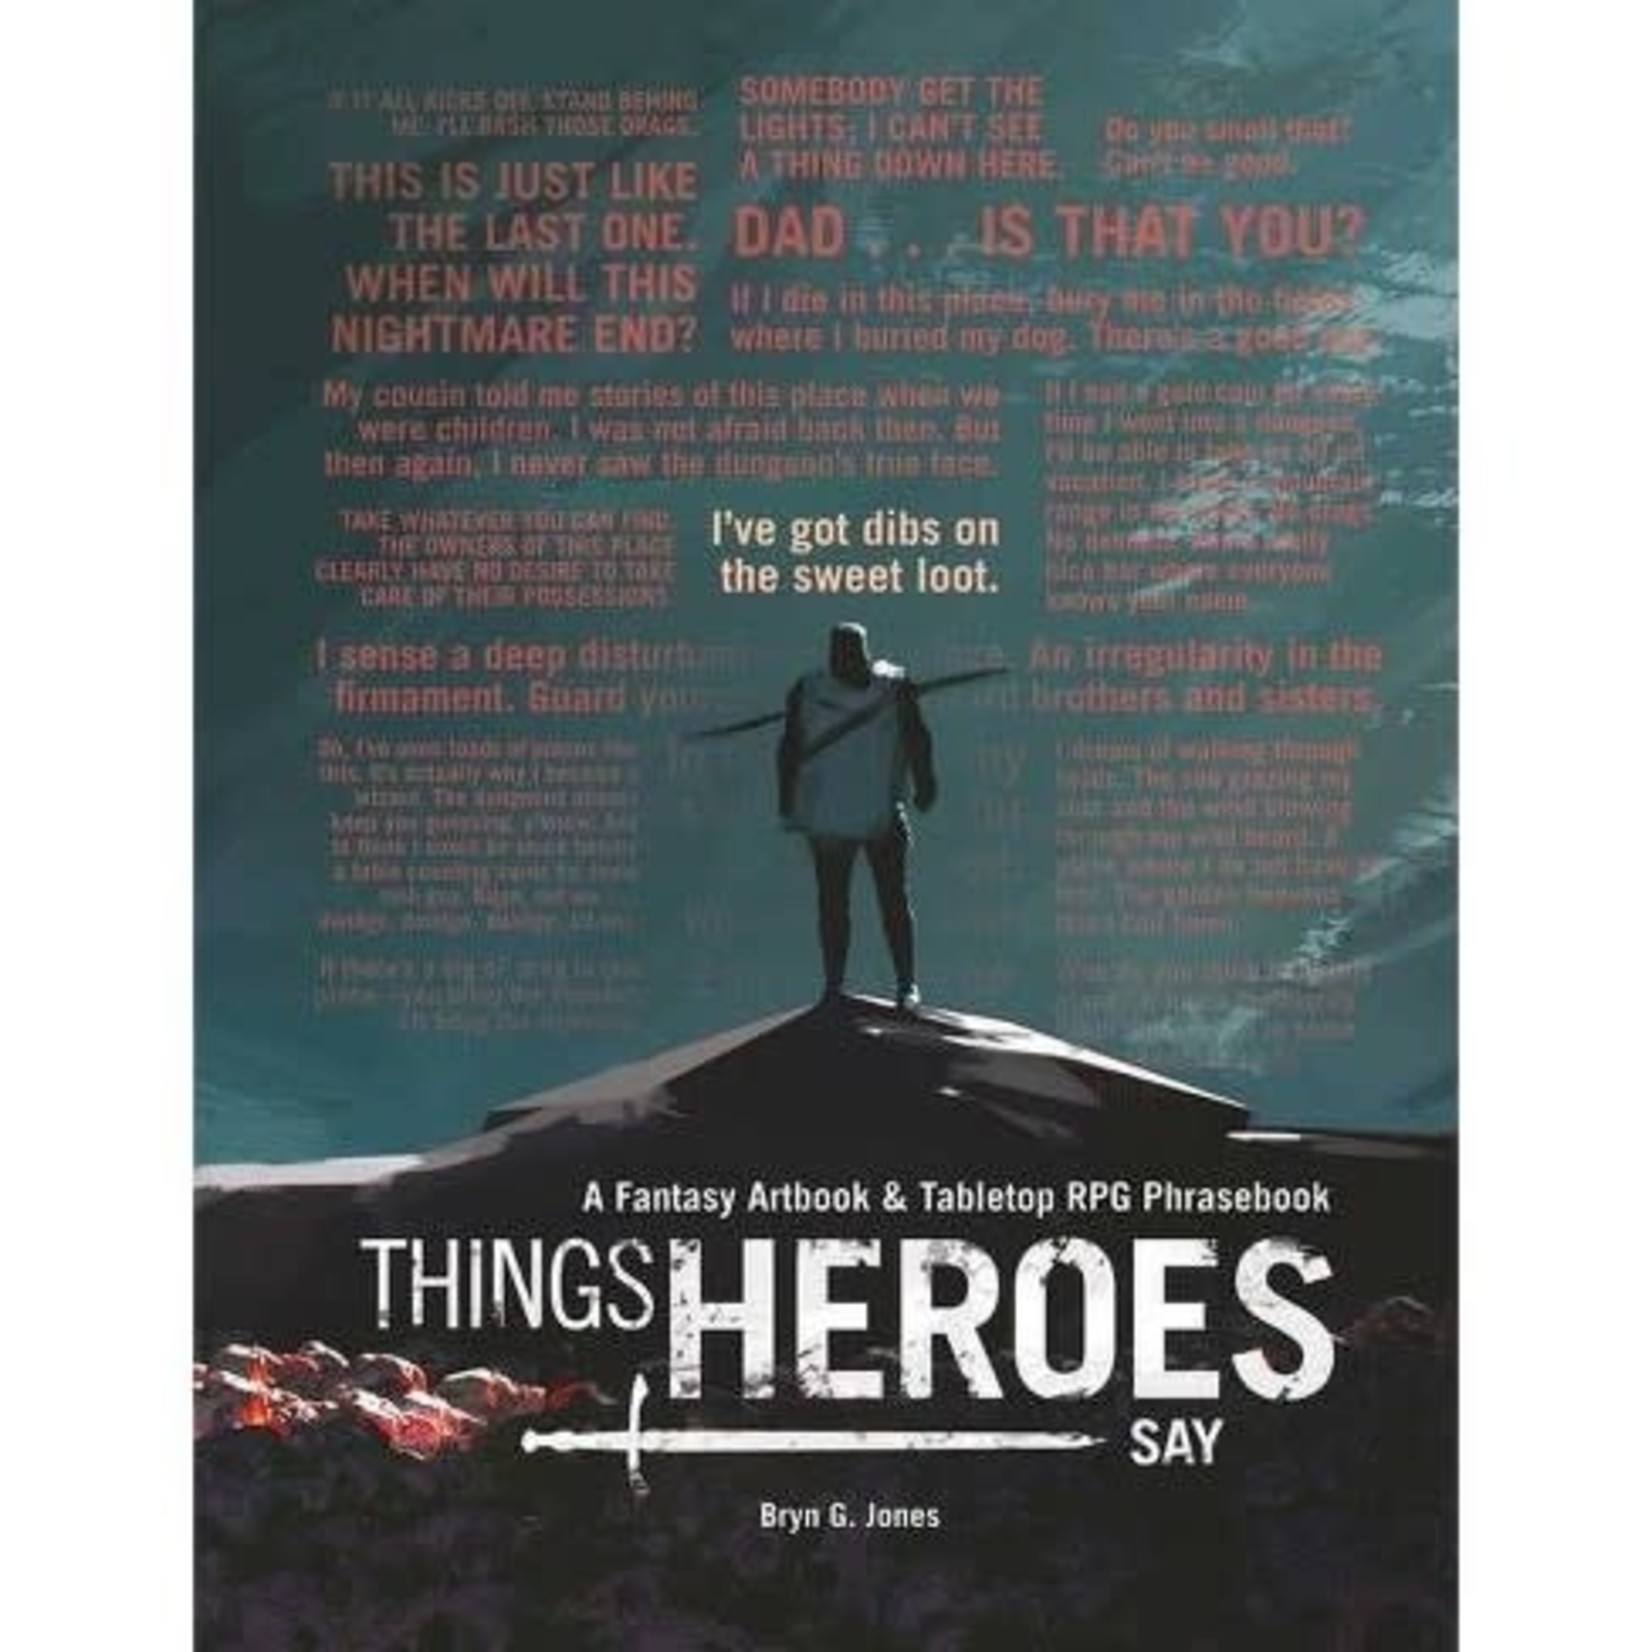 Things Heroes Say